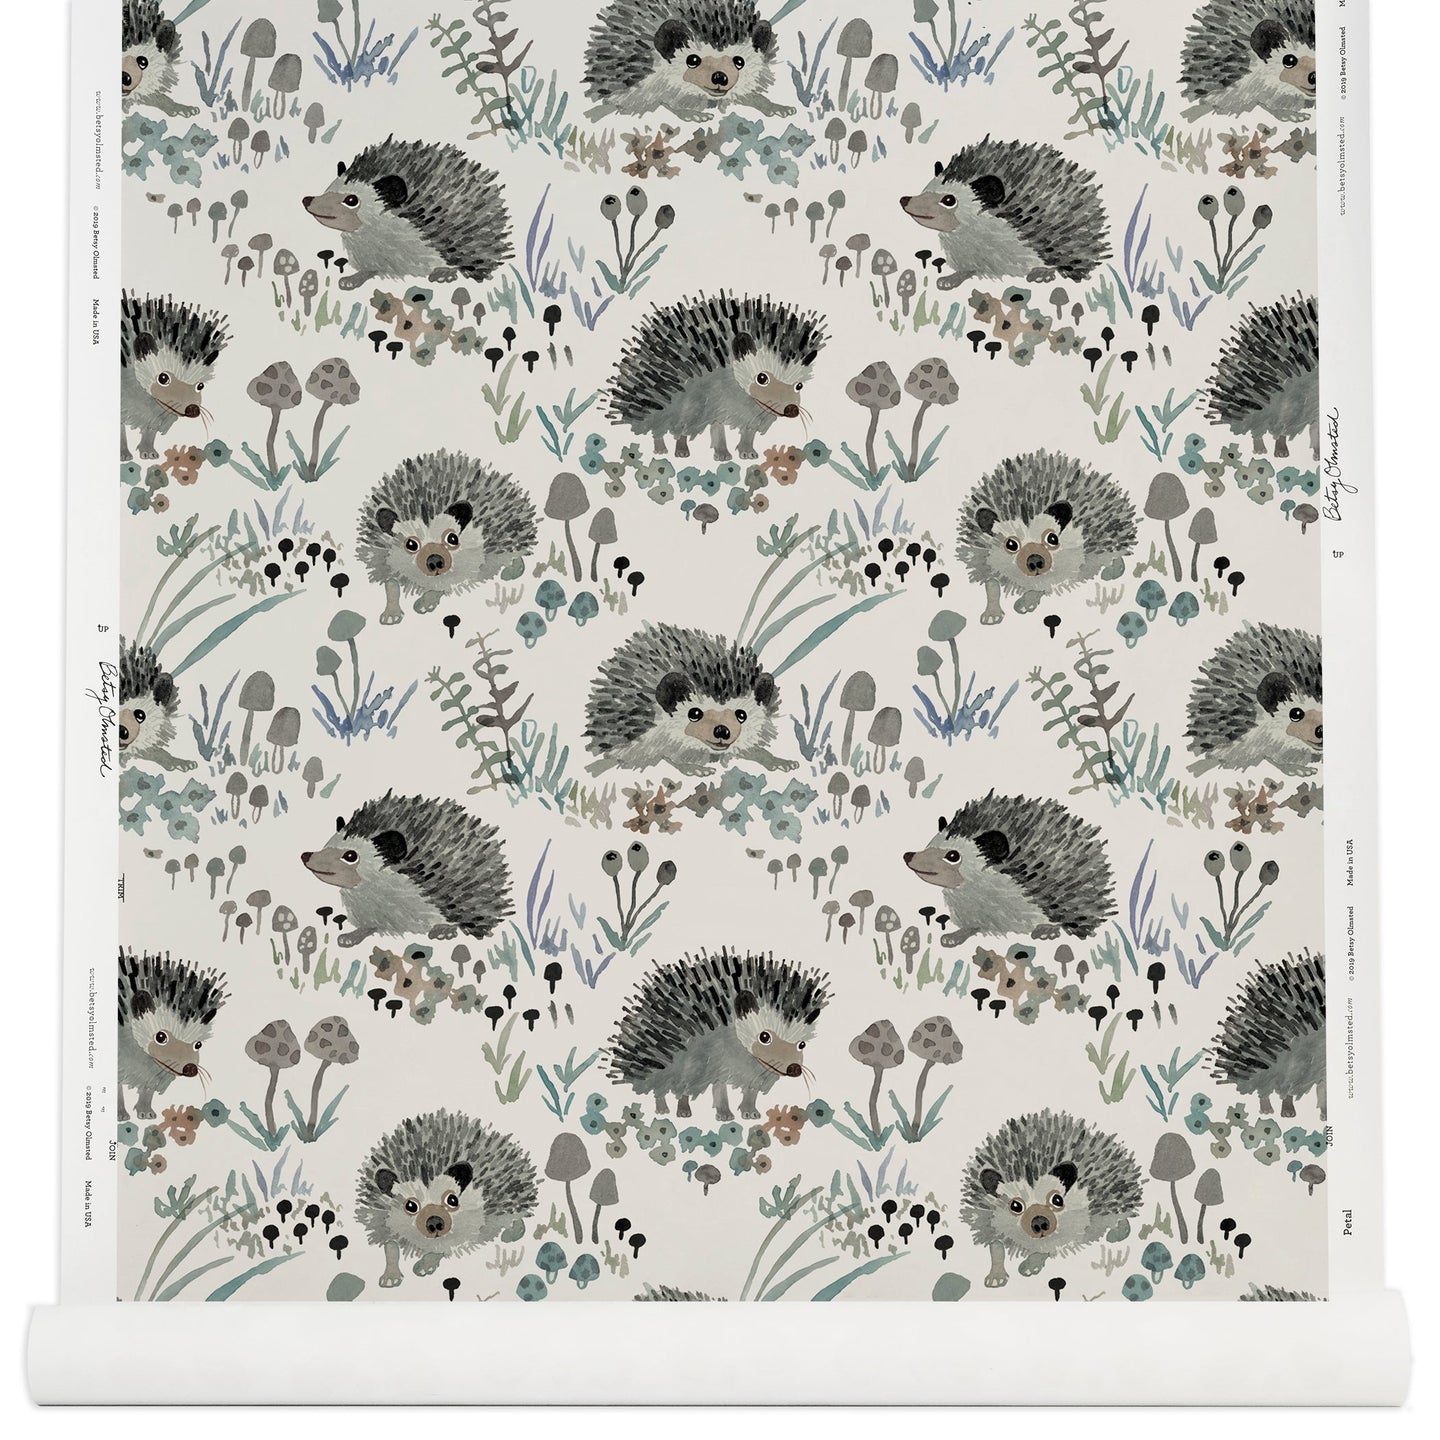 Hedgehogs Wallpaper in Neutral